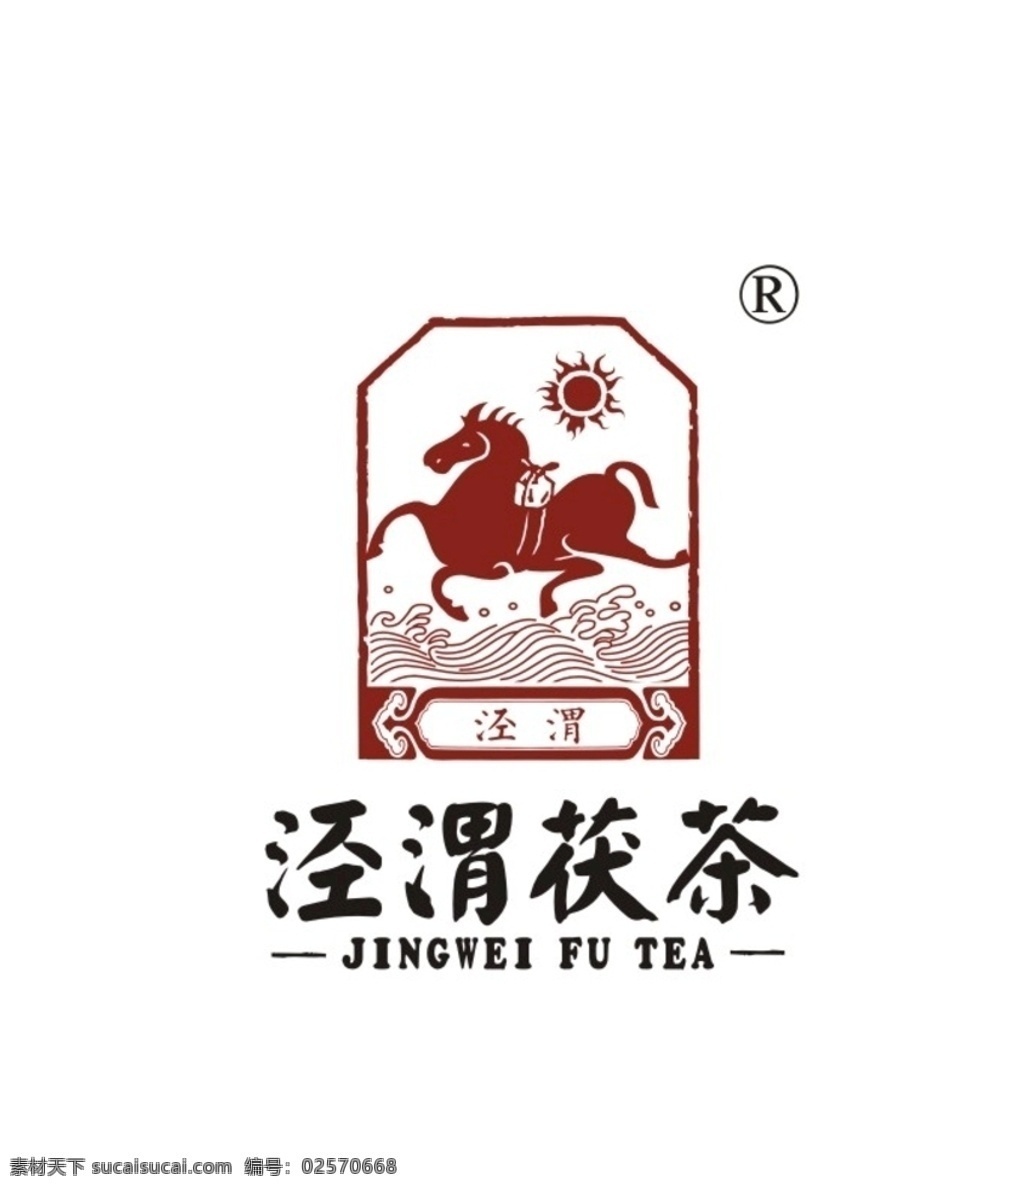 泾渭 茯 茶 logo 茯茶logo 泾渭茯茶 茶logo 茯茶 矢量 logo专辑 logo设计